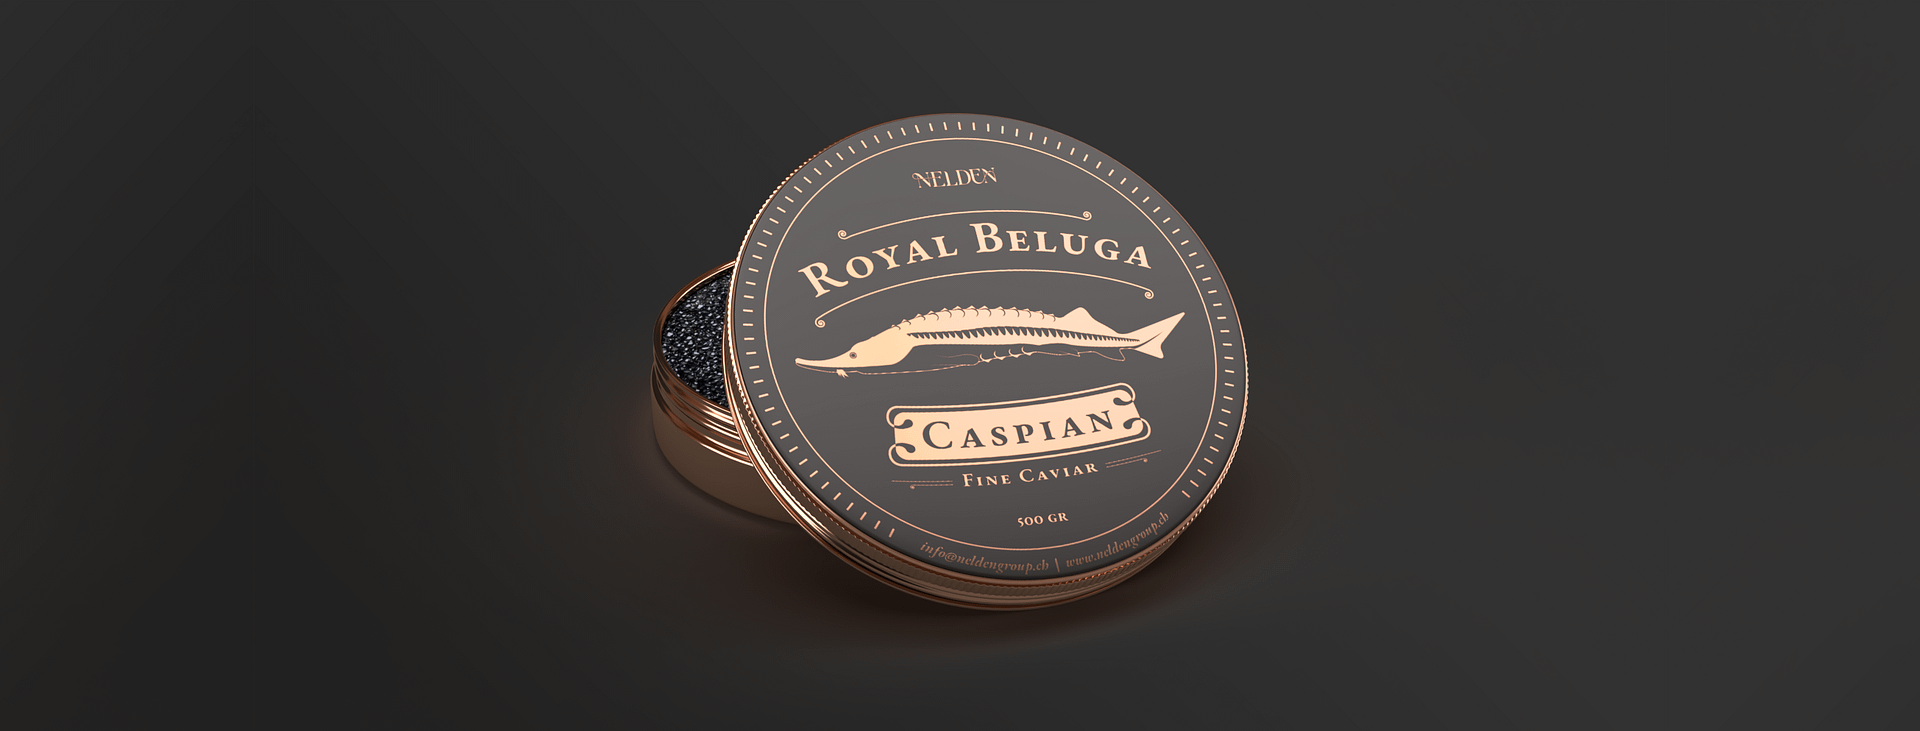 Nelden: Diseño de paquete de caviar “Royal Beluga”.